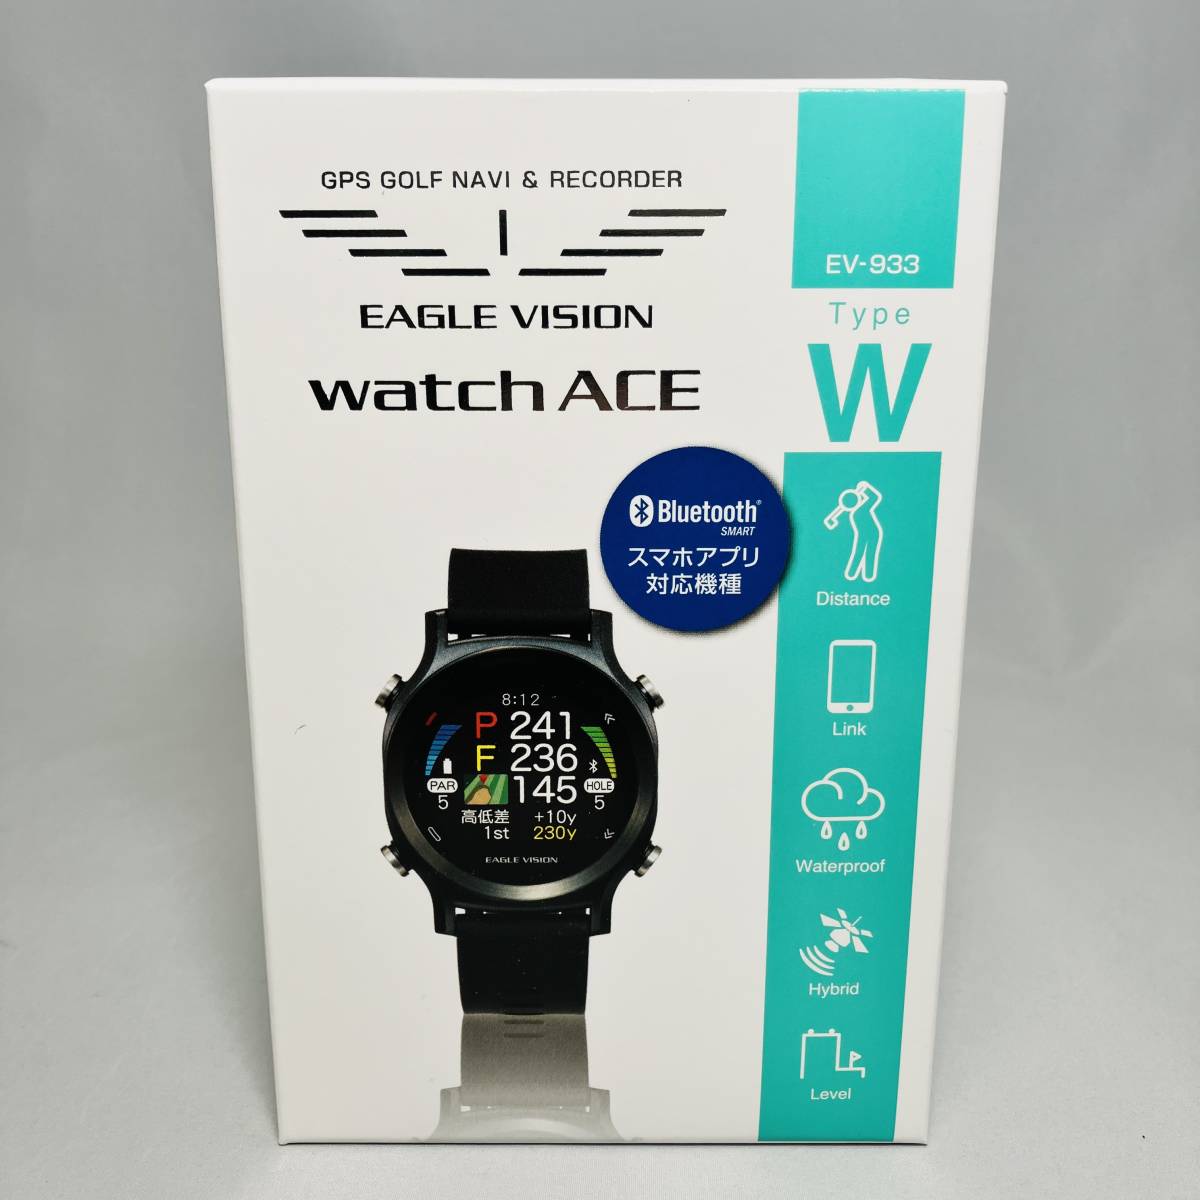 新品 アサヒゴルフ EAGLE VISION watch ACE EV-933-BK ブラック黒 朝日ゴルフ イーグルビジョン ウォッチ エース GPSゴルフナビ 距離計測器_画像1